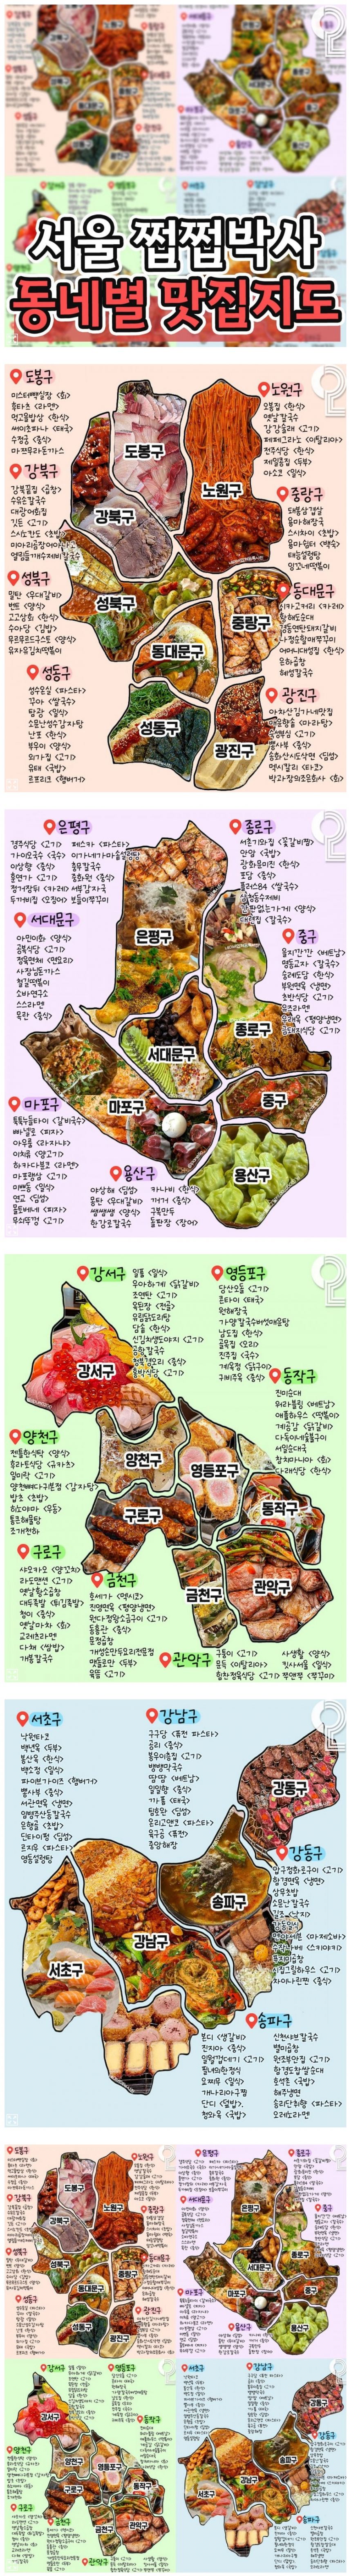 서울 쩝쩝박사 동네별 맛집 지도